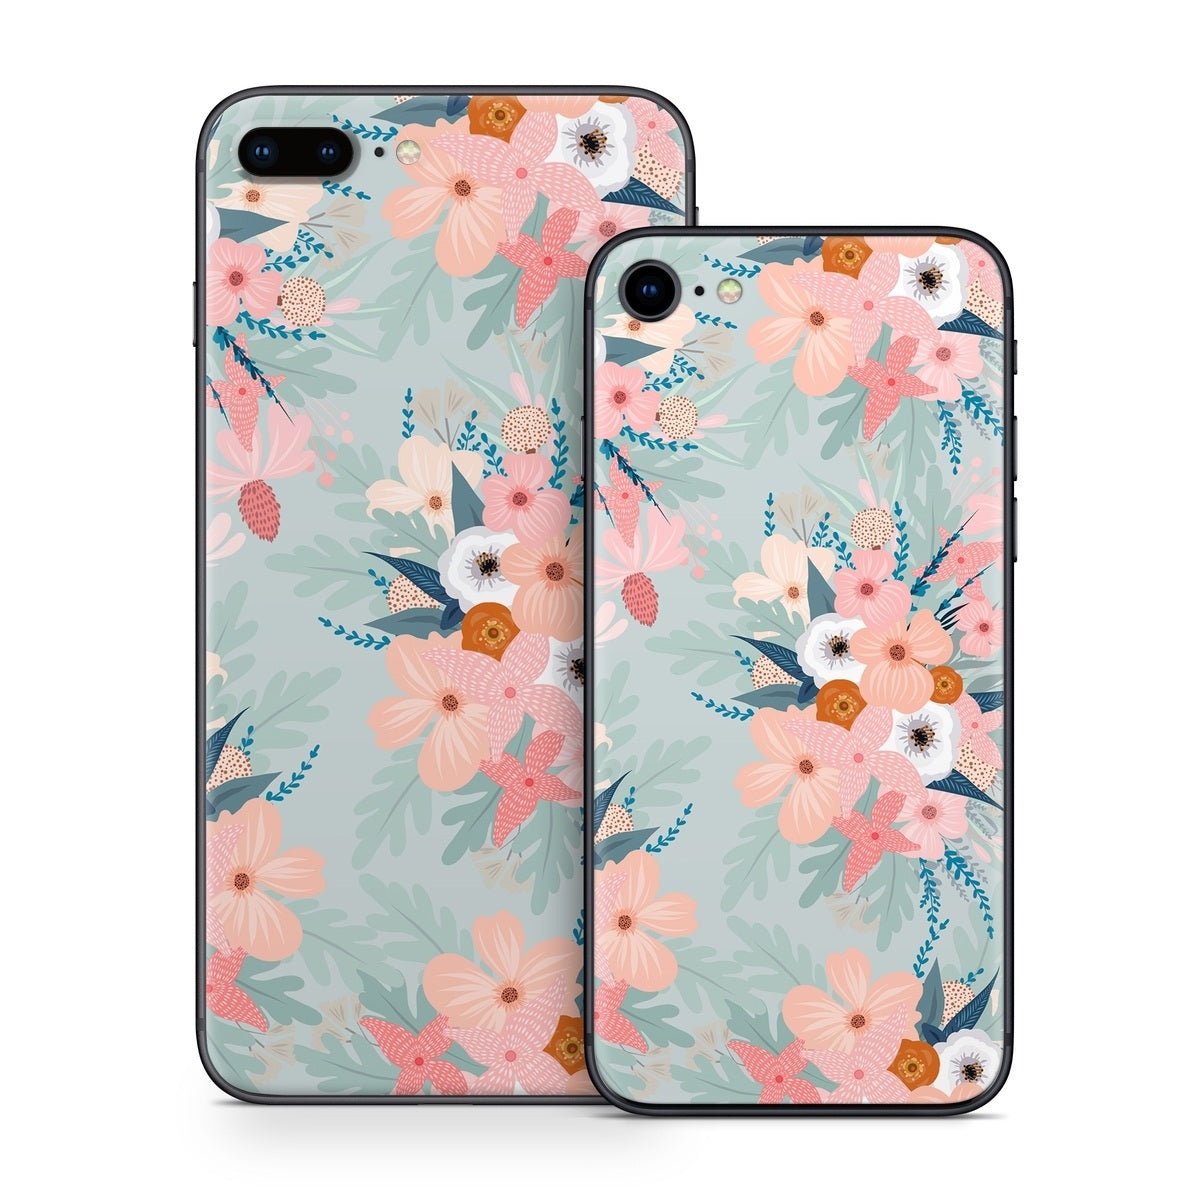 Ada Garden - Apple iPhone 8 Skin - Iveta Abolina - DecalGirl